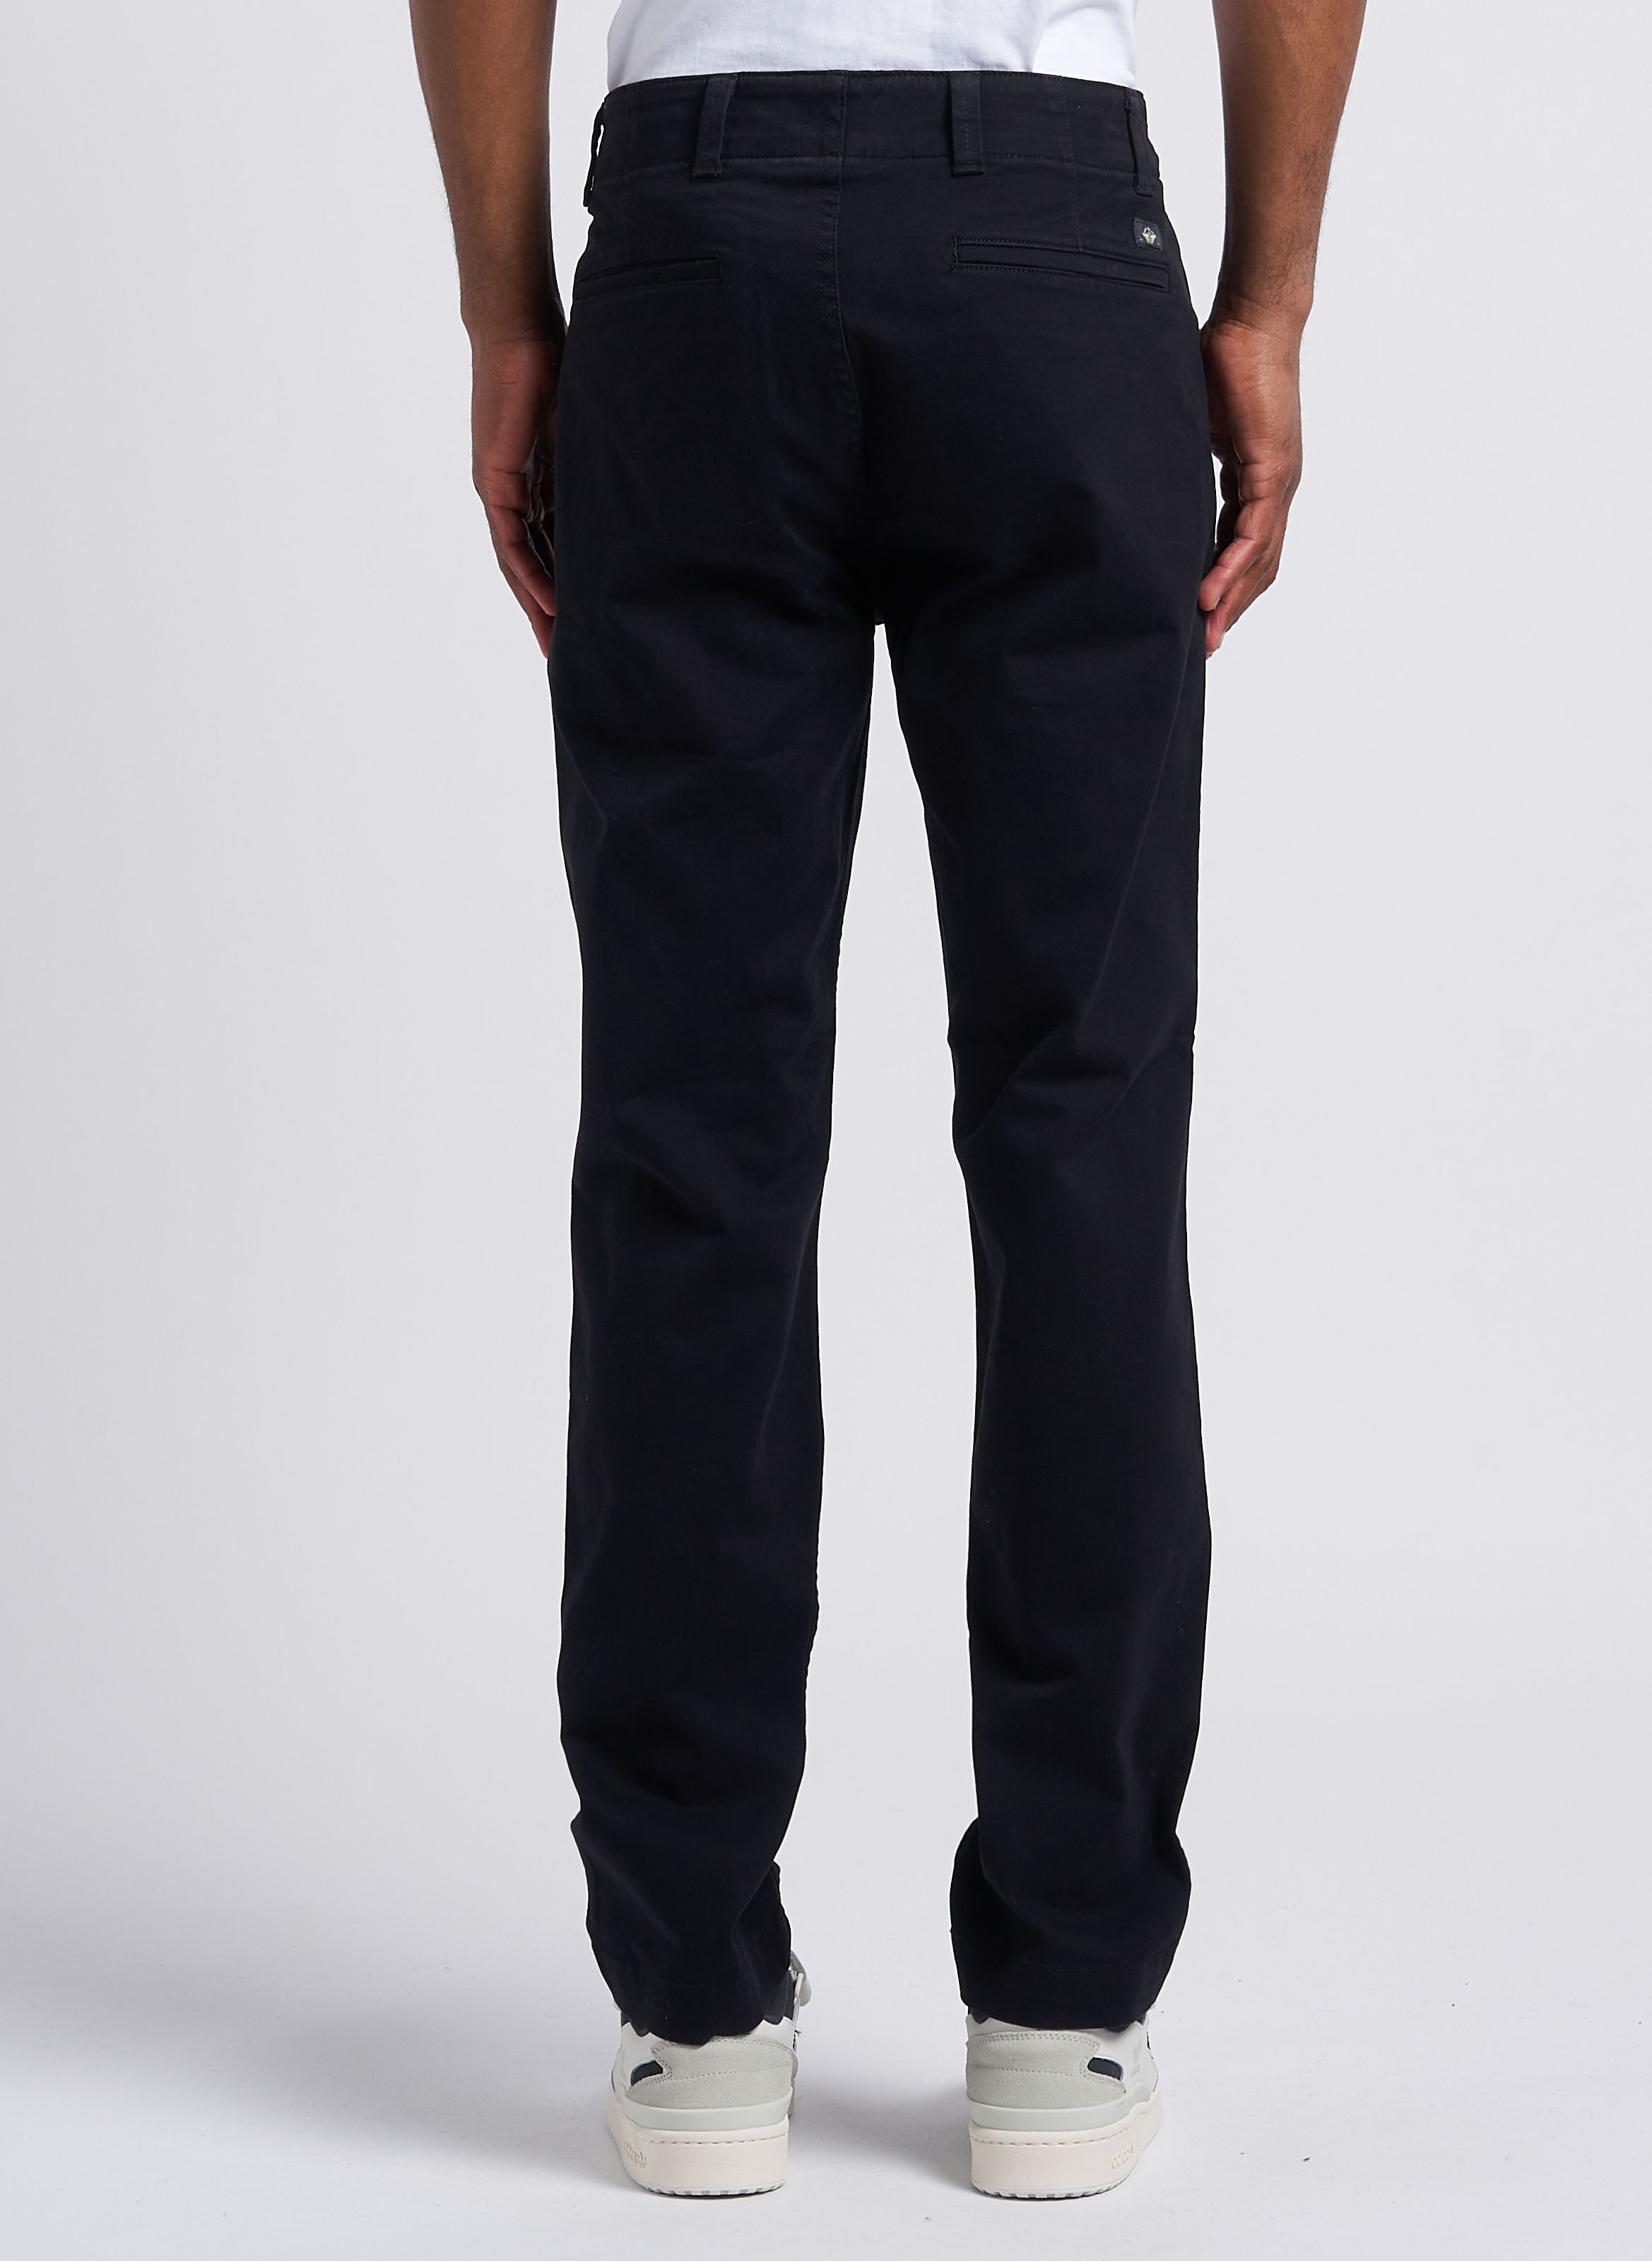 Vintage Black Pants Mens Size 32 Waist, 1990s Dockers Classic Black Khaki  Style Pants, Business Casual Mens Pants - Etsy